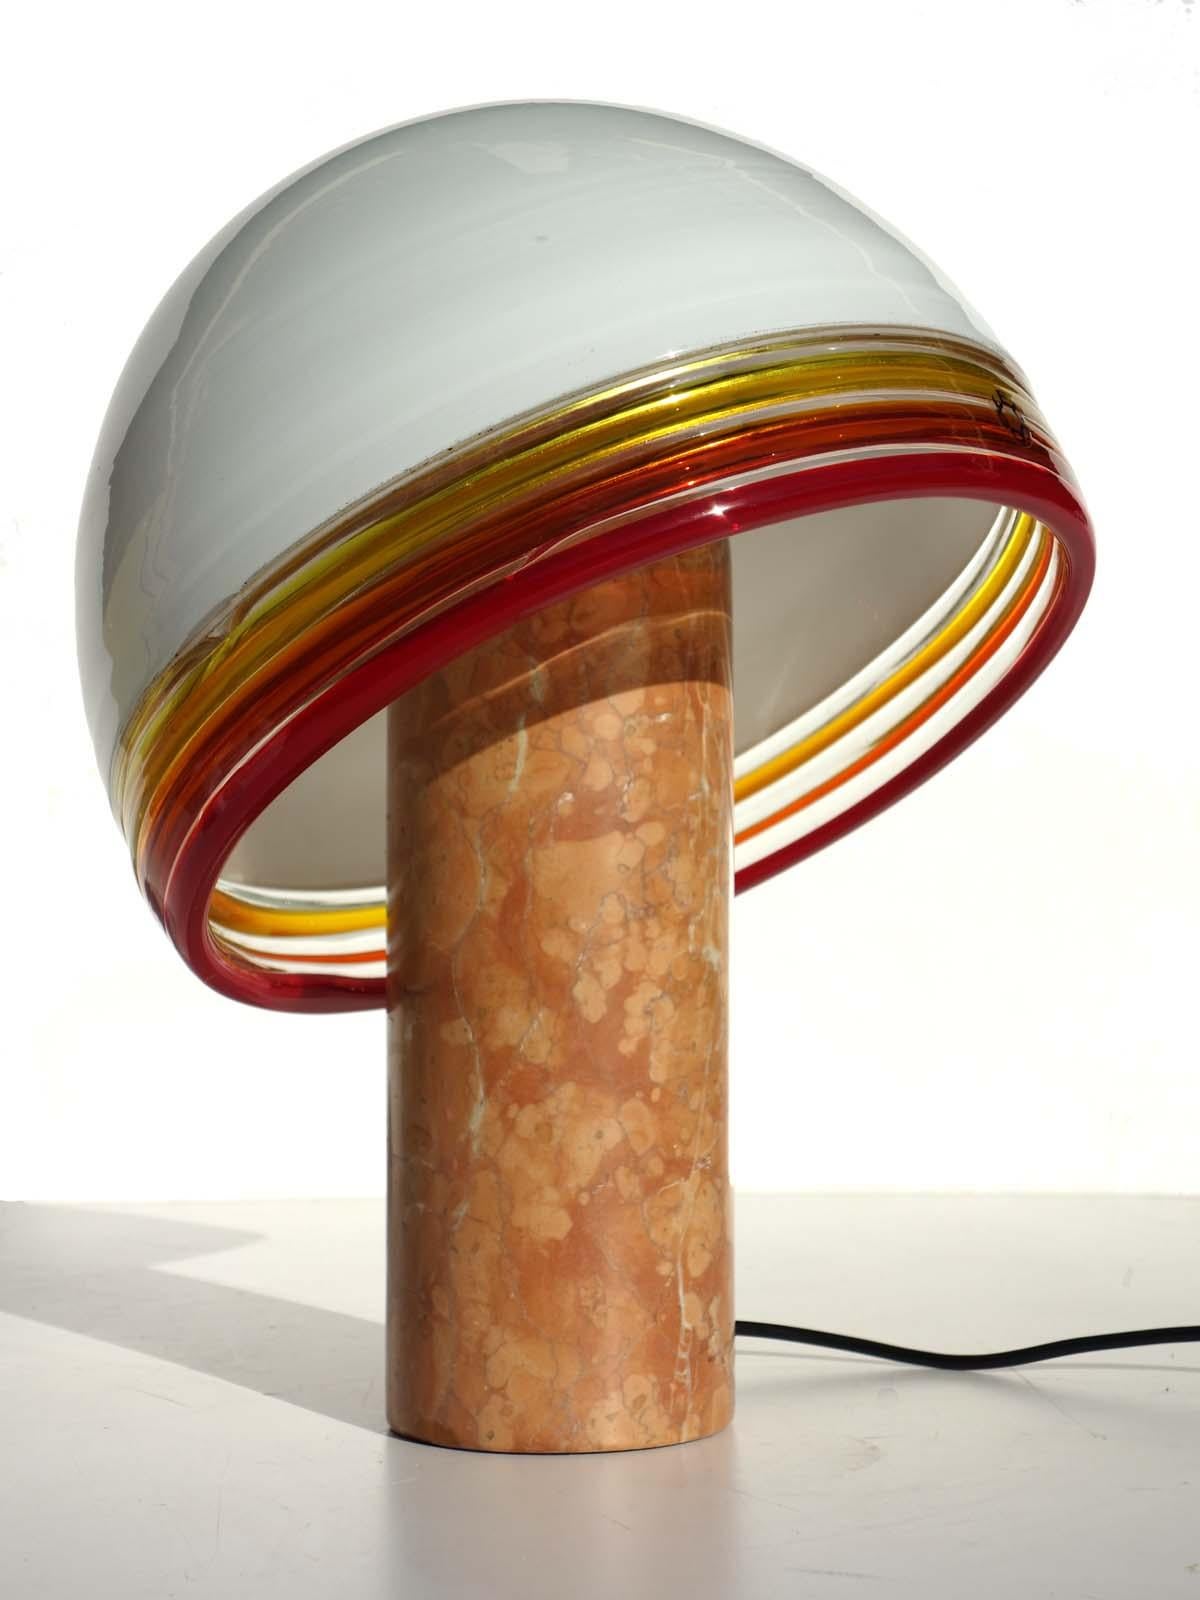 Opalweißer mundgeblasener Glasschirm
Drei verschiedenfarbige Ringe aus rotem, orangefarbenem und gelbem Glas. Sockel aus Marmor.
Perfekter Zustand.
Perfekt funktionierend.